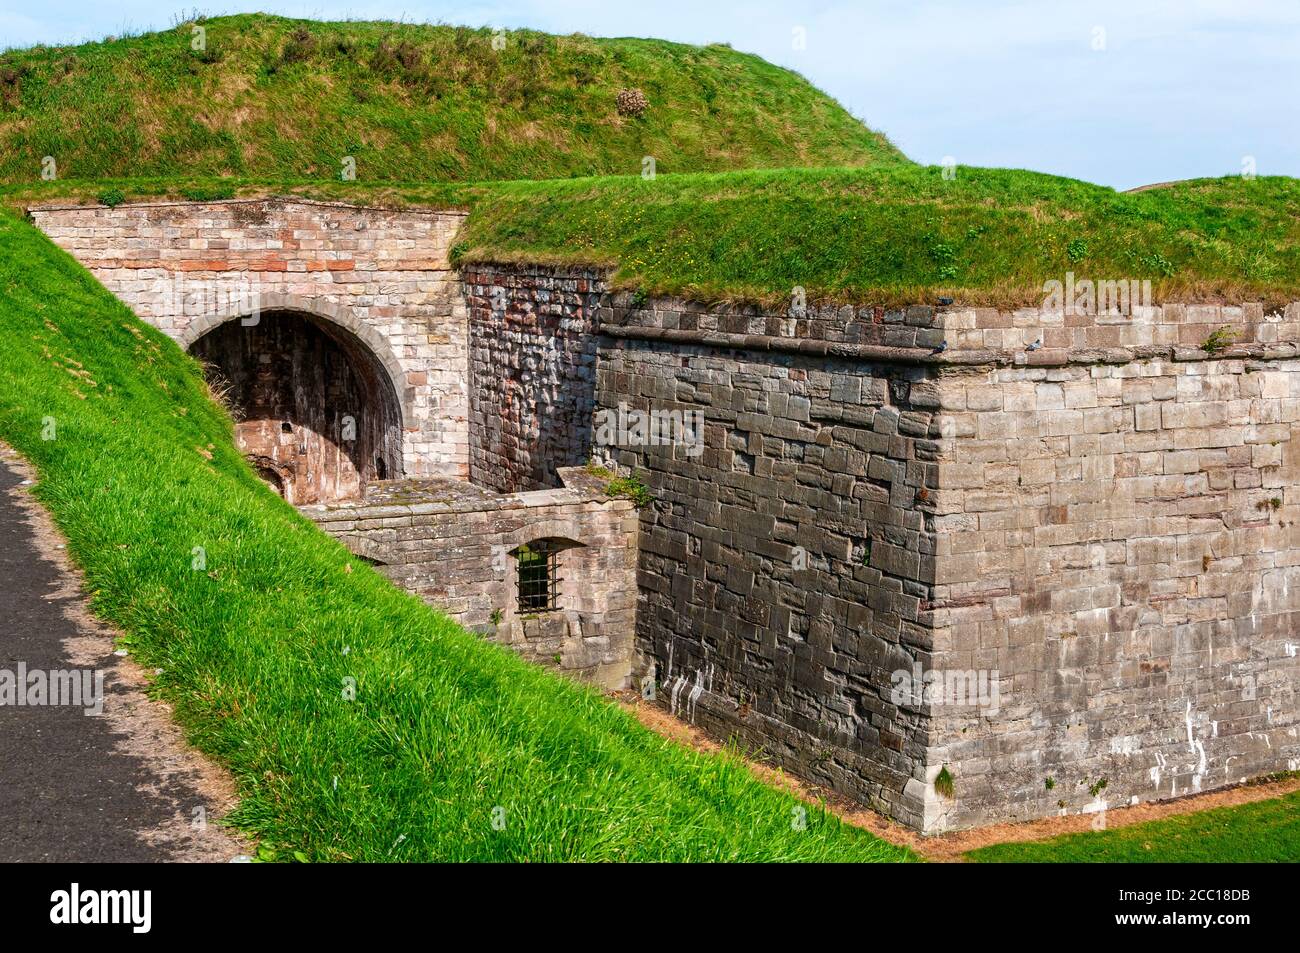 Le massicce pareti ricoperte di erba del bastione Cumberland proteggono la piattaforma dell'artiglieria, un tempo all'avanguardia della tecnologia utilizzata per difendere Berwick Foto Stock